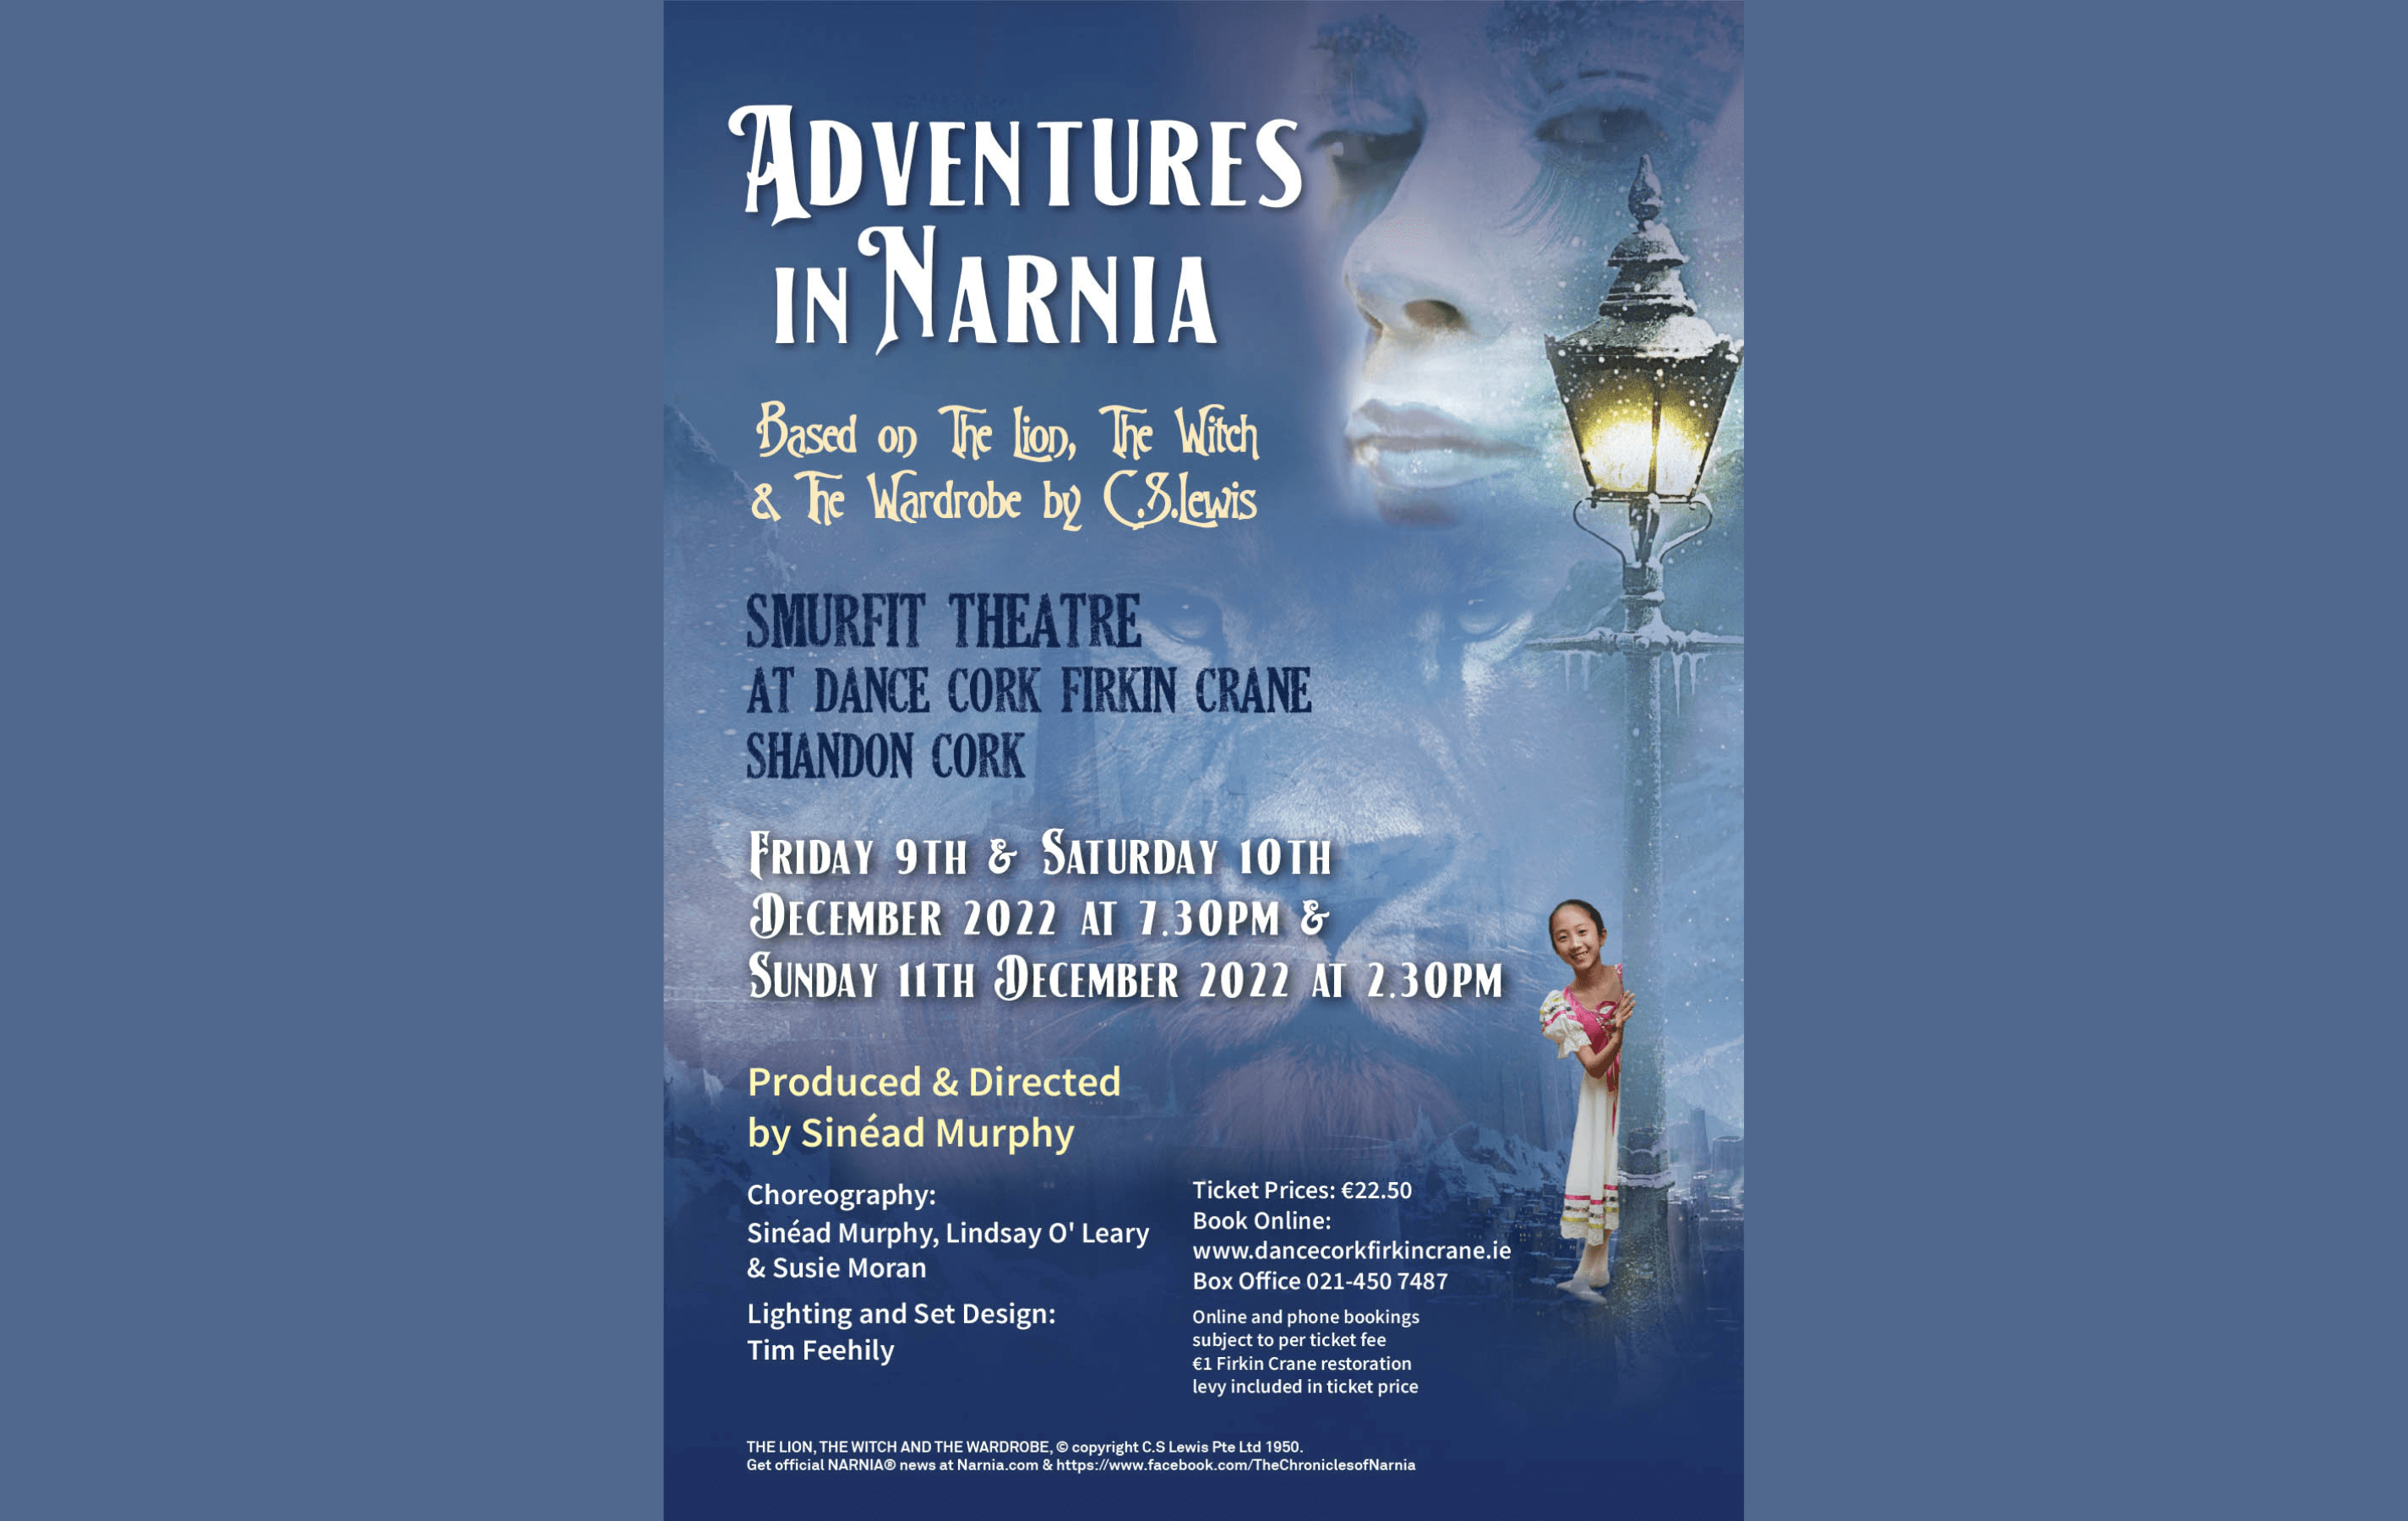 Firkin Crane Theatre, Cork: Adventures in Narnia